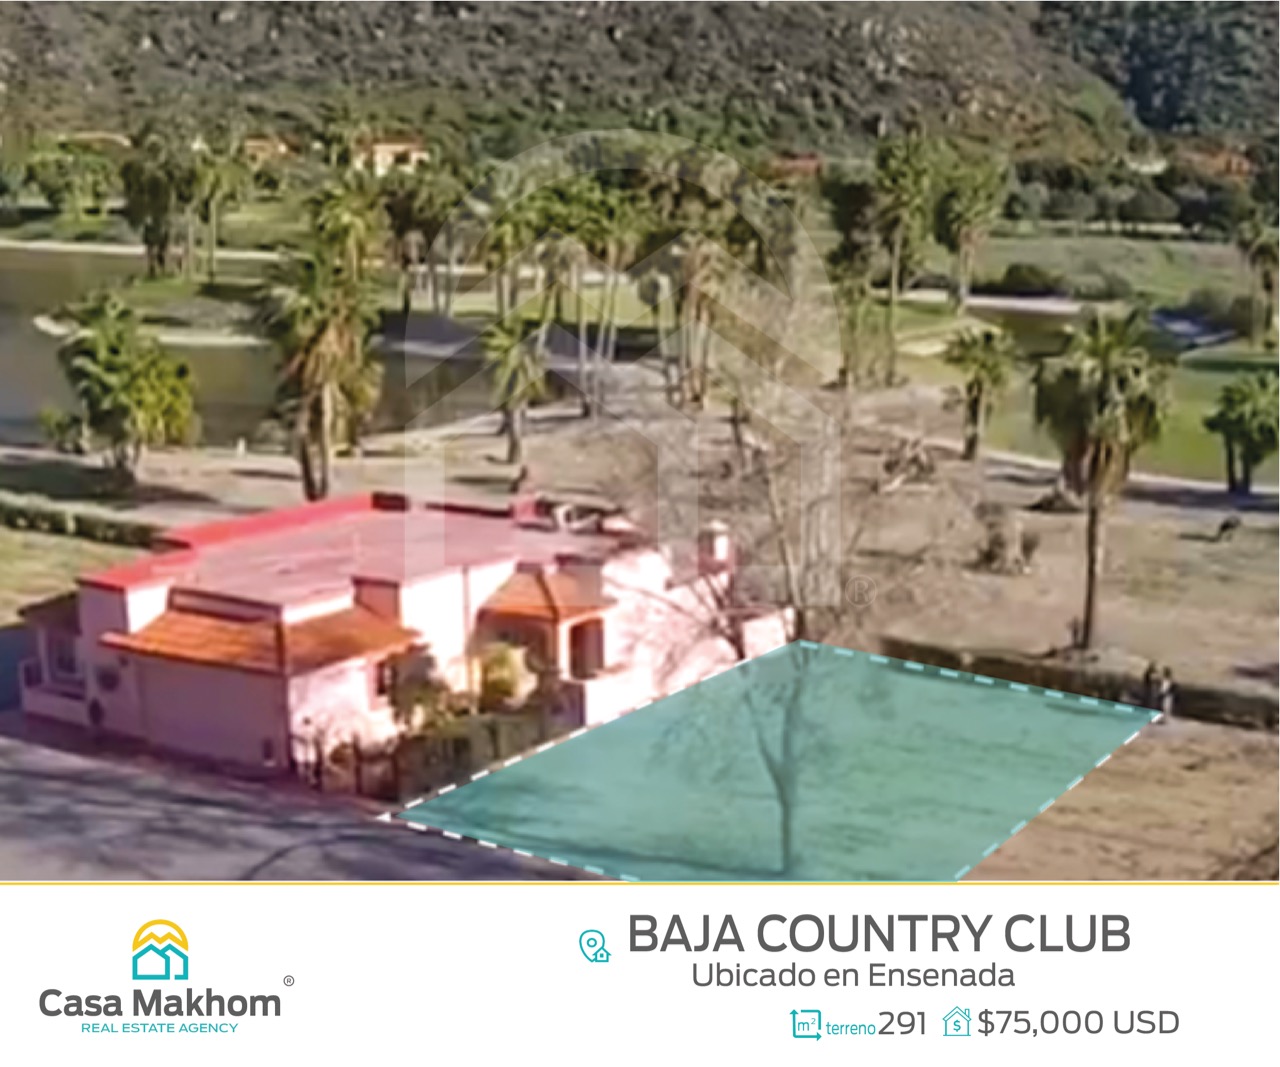 Terreno en Baja Country Club Ensenada – Casa Makhom